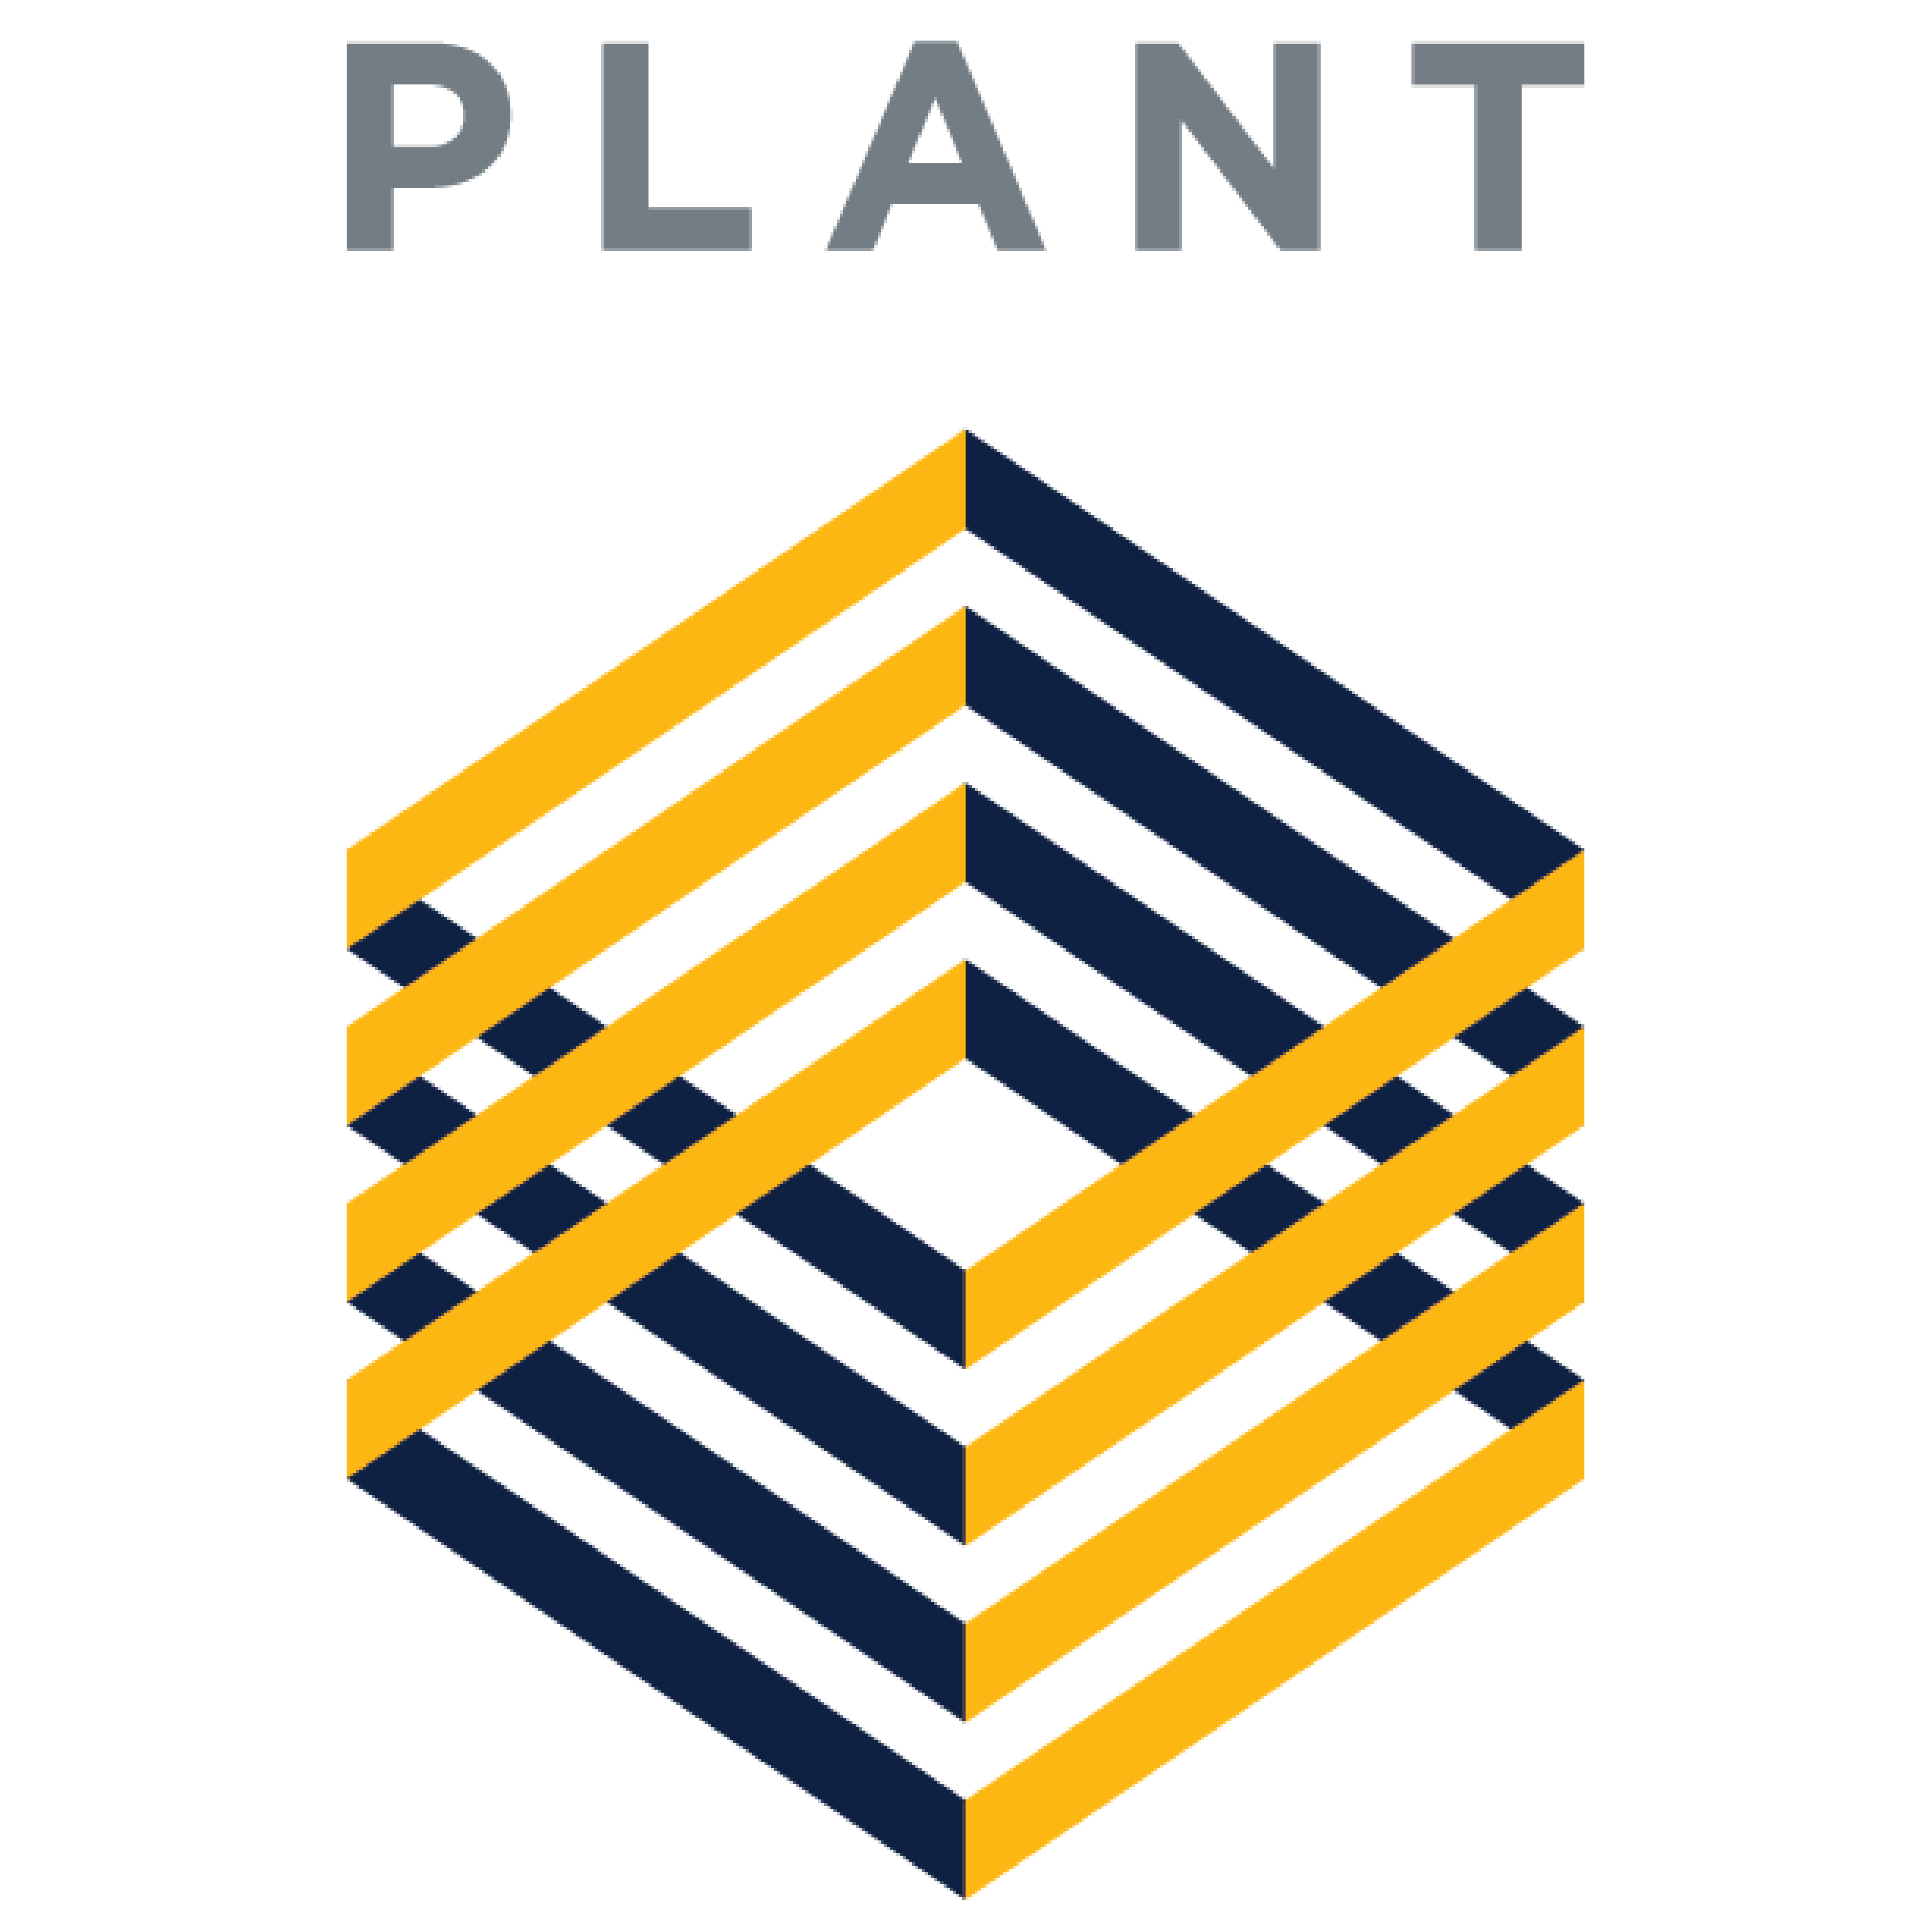 Plant Construction